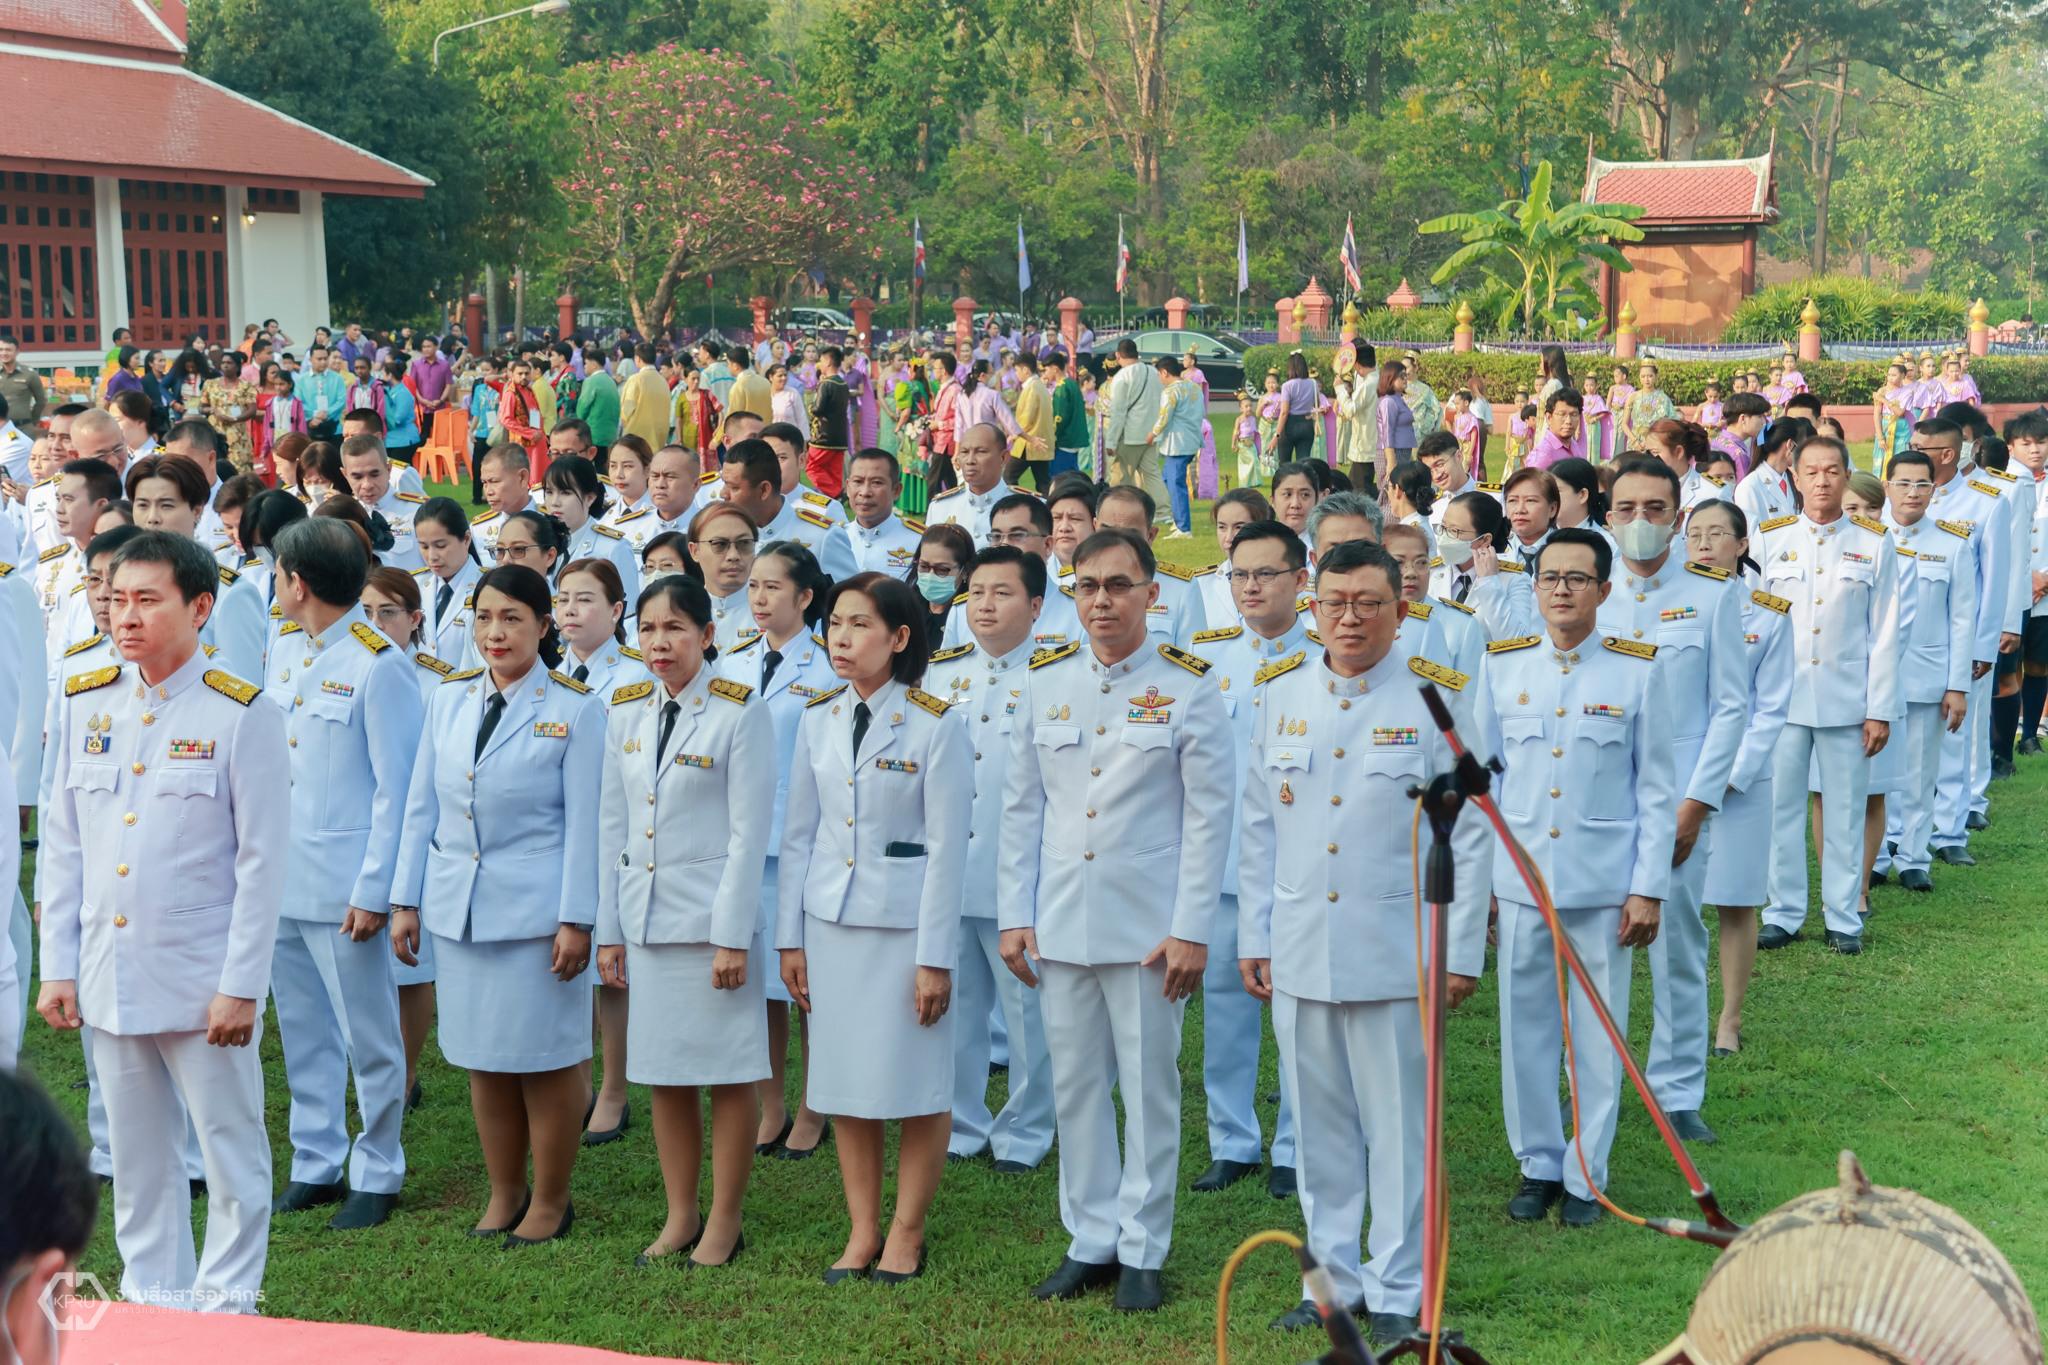 3. วันอนุรักษ์มรดกไทย เพื่อเฉลิมพระเกียรติสมเด็จพระกนิษฐาธิราชเจ้า กรมสมเด็จพระเทพรัตนราชสุดาฯ สยามบรมราชกุมารี